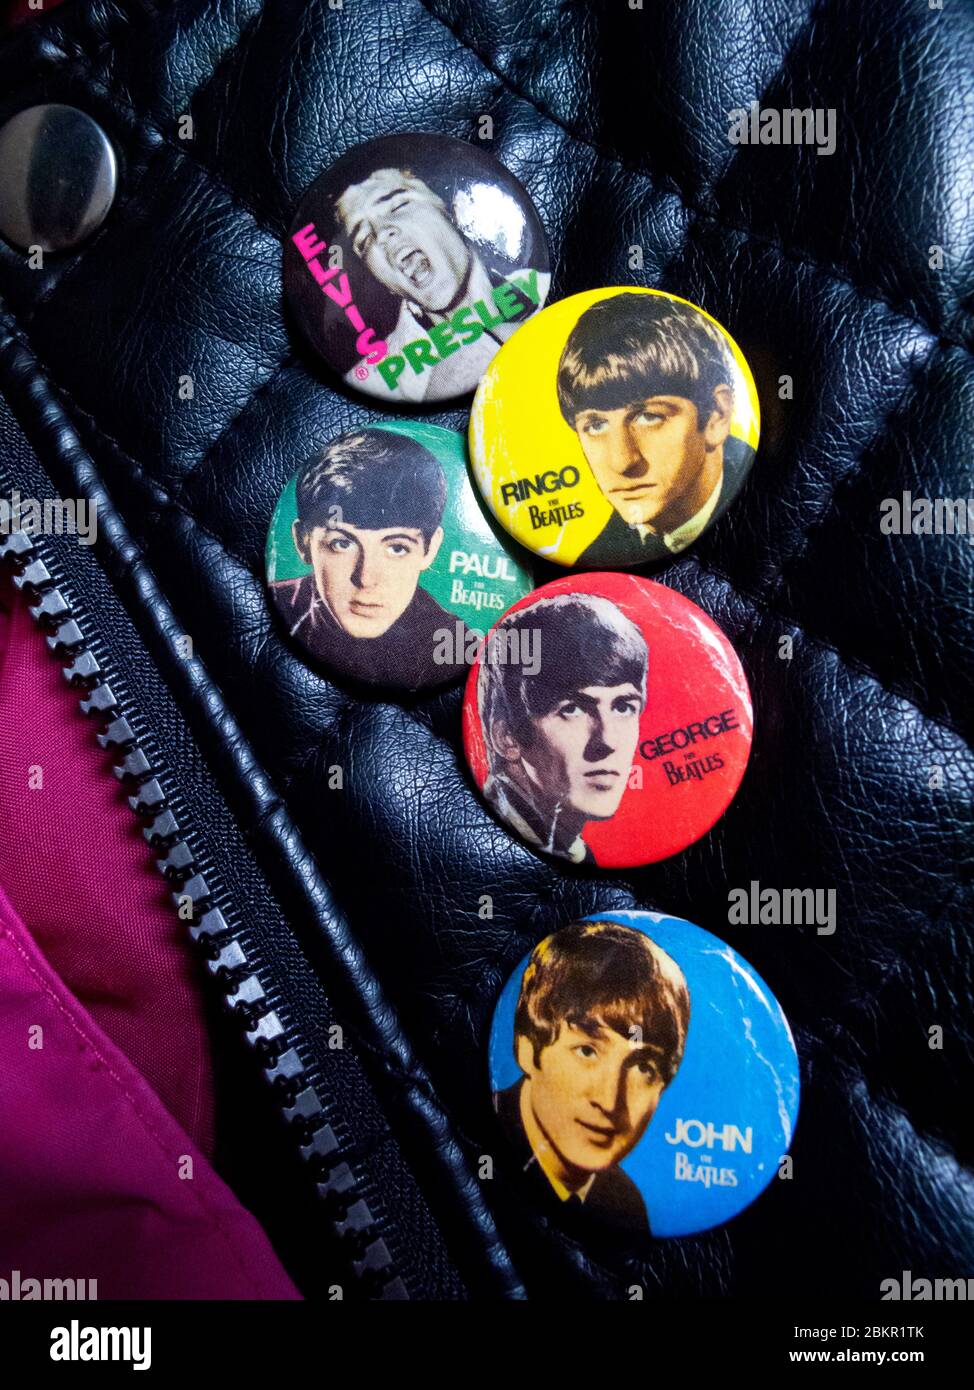 Veste en cuir avec badges des Beatles John Lennon Paul McCartney George Harrison et Ringo Starr à côté d'un badge montrant Elvis Presley. Banque D'Images